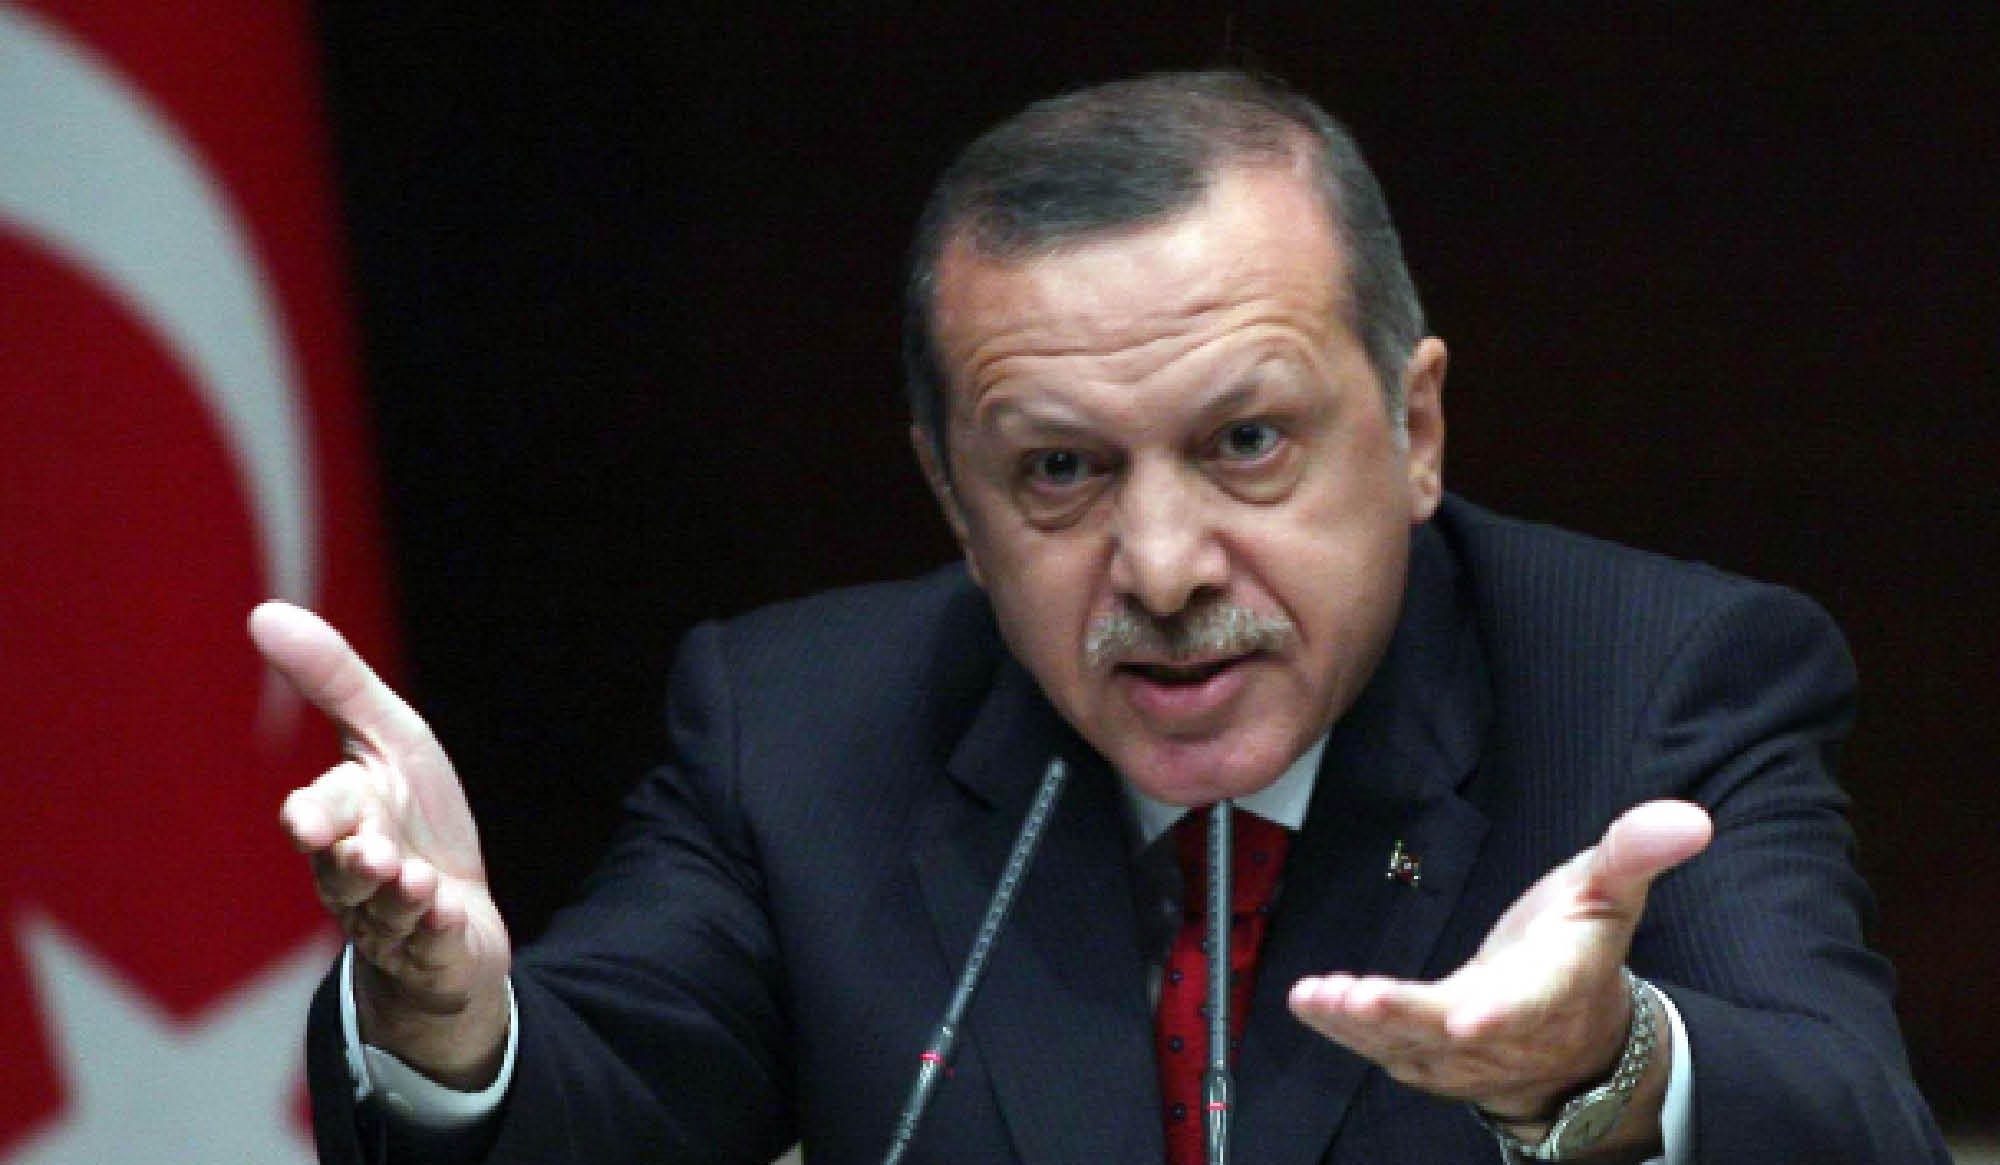   برلماني تركي يفضح بالأرقام انتهاكات «أردوغان»